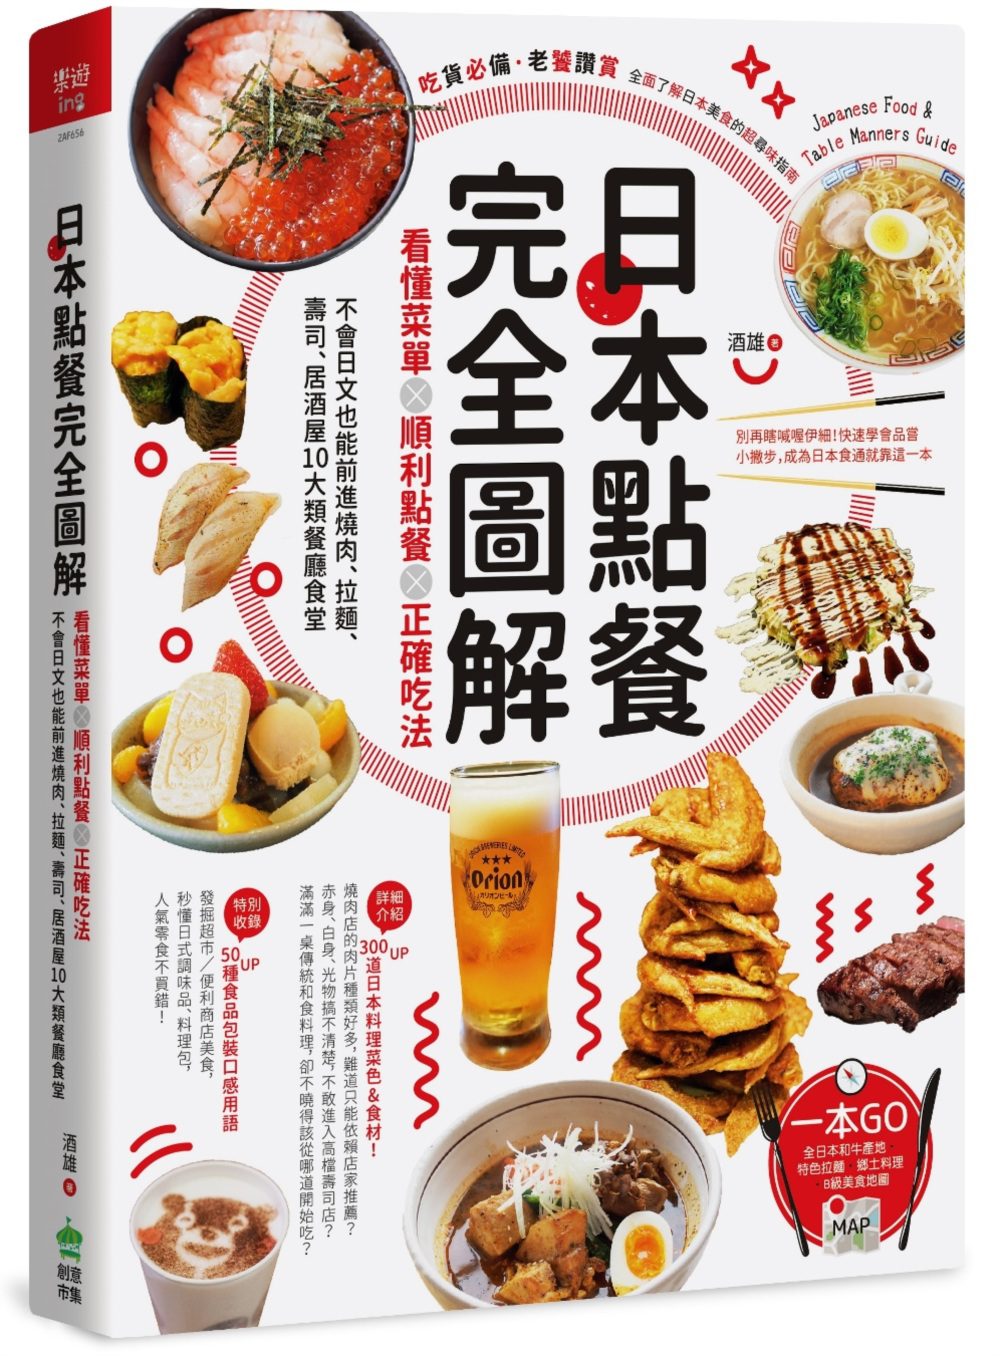 日本點餐完全圖解:看懂菜單╳順利點餐╳正確吃法-不會日文也能前進燒肉.拉麵.壽司.居酒屋10大類餐廳食堂